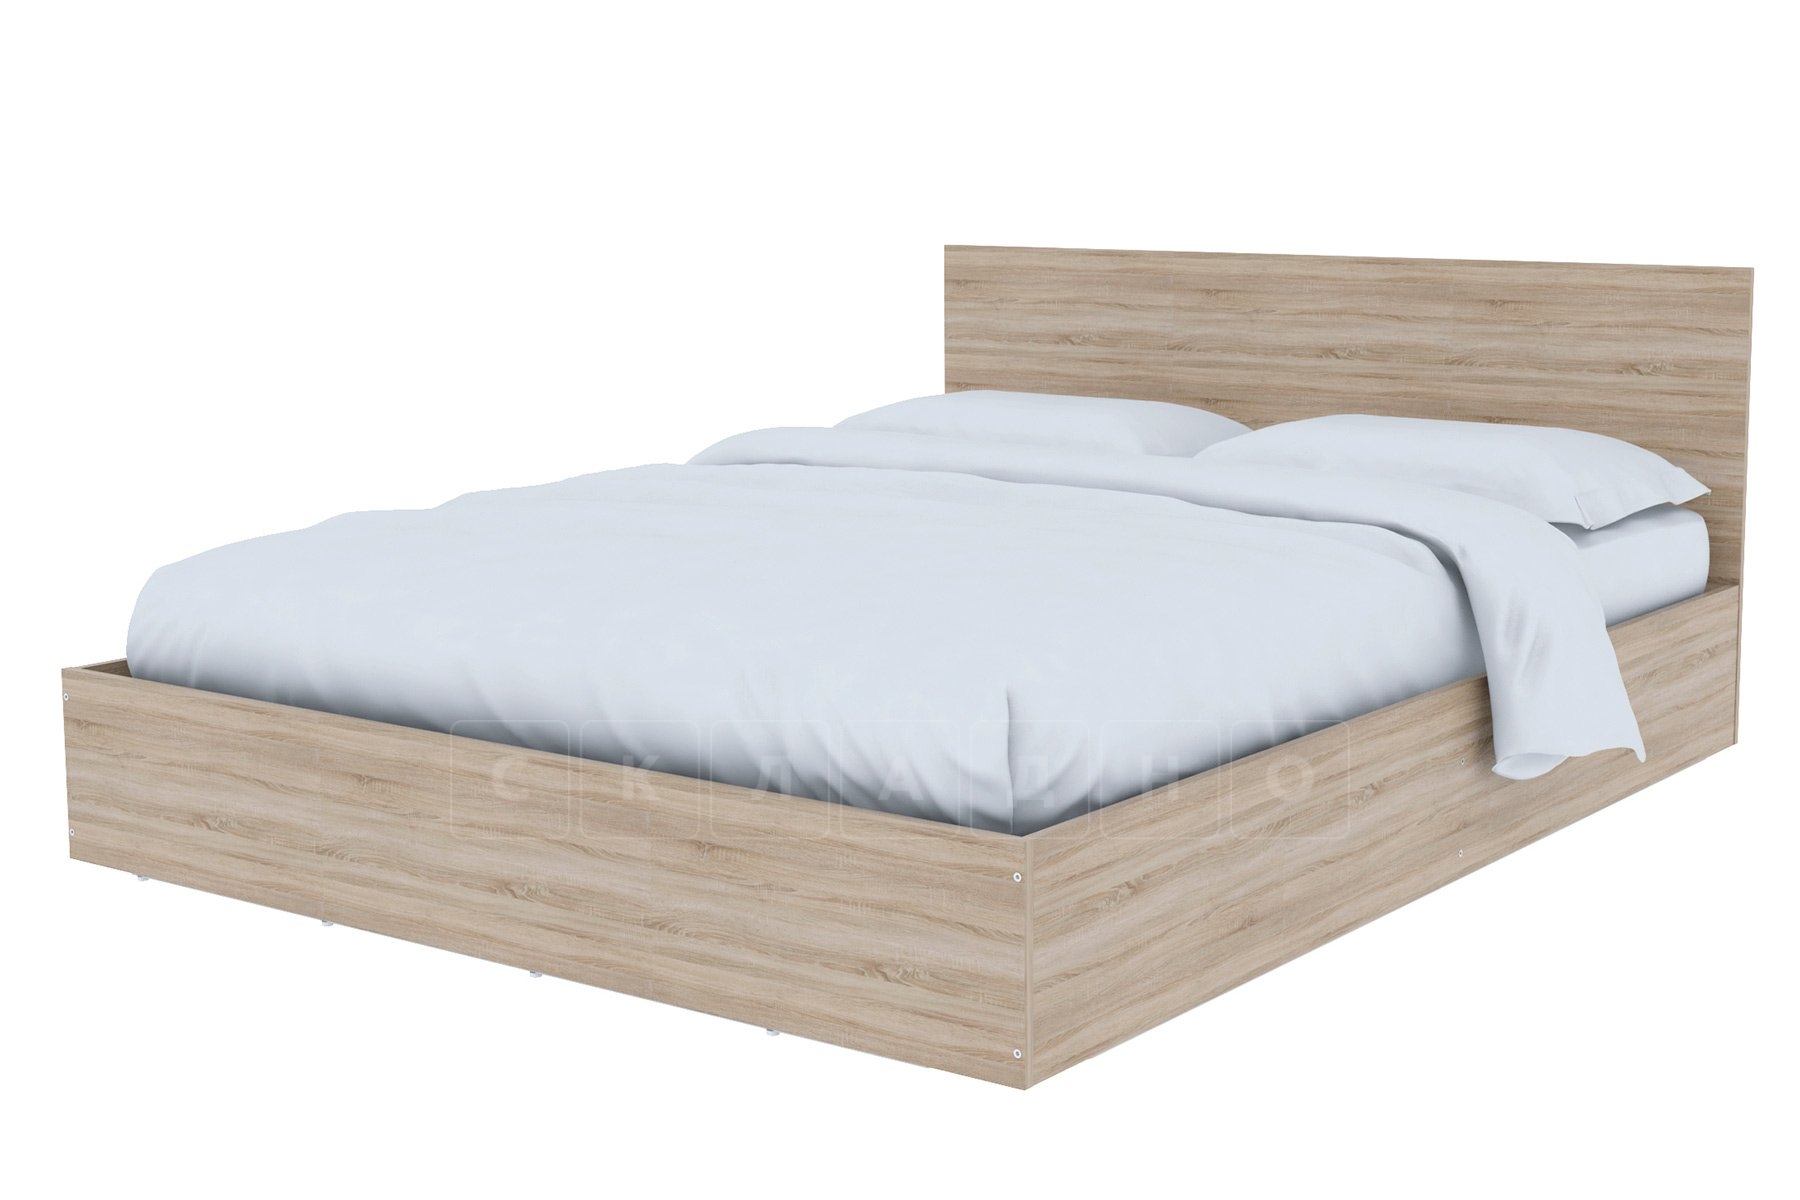 Кровать с подъемным механизмом Соната 160 см фото 2 | интернет-магазин Складно